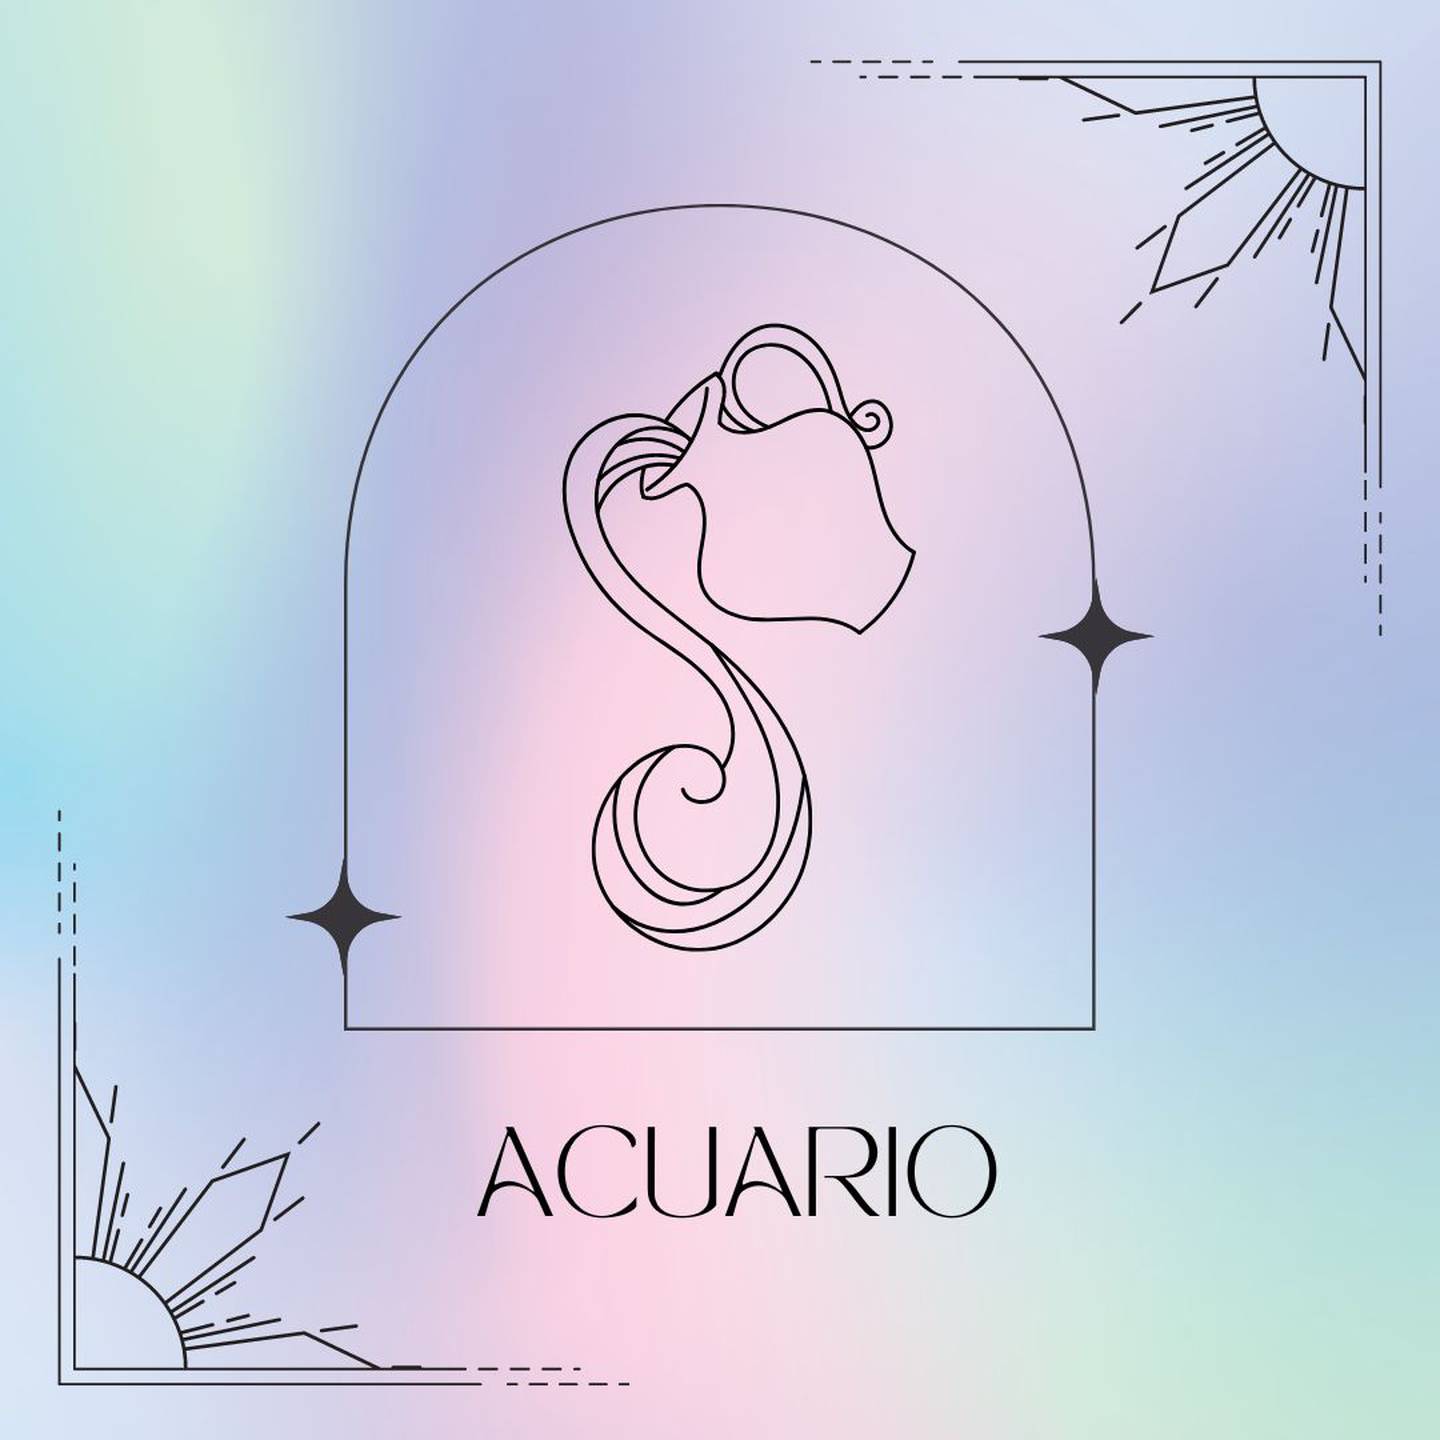 Dibujado en negro, el símbolo de Acuario aparece enmarcado sobre un fondo de suaves colores pastel.